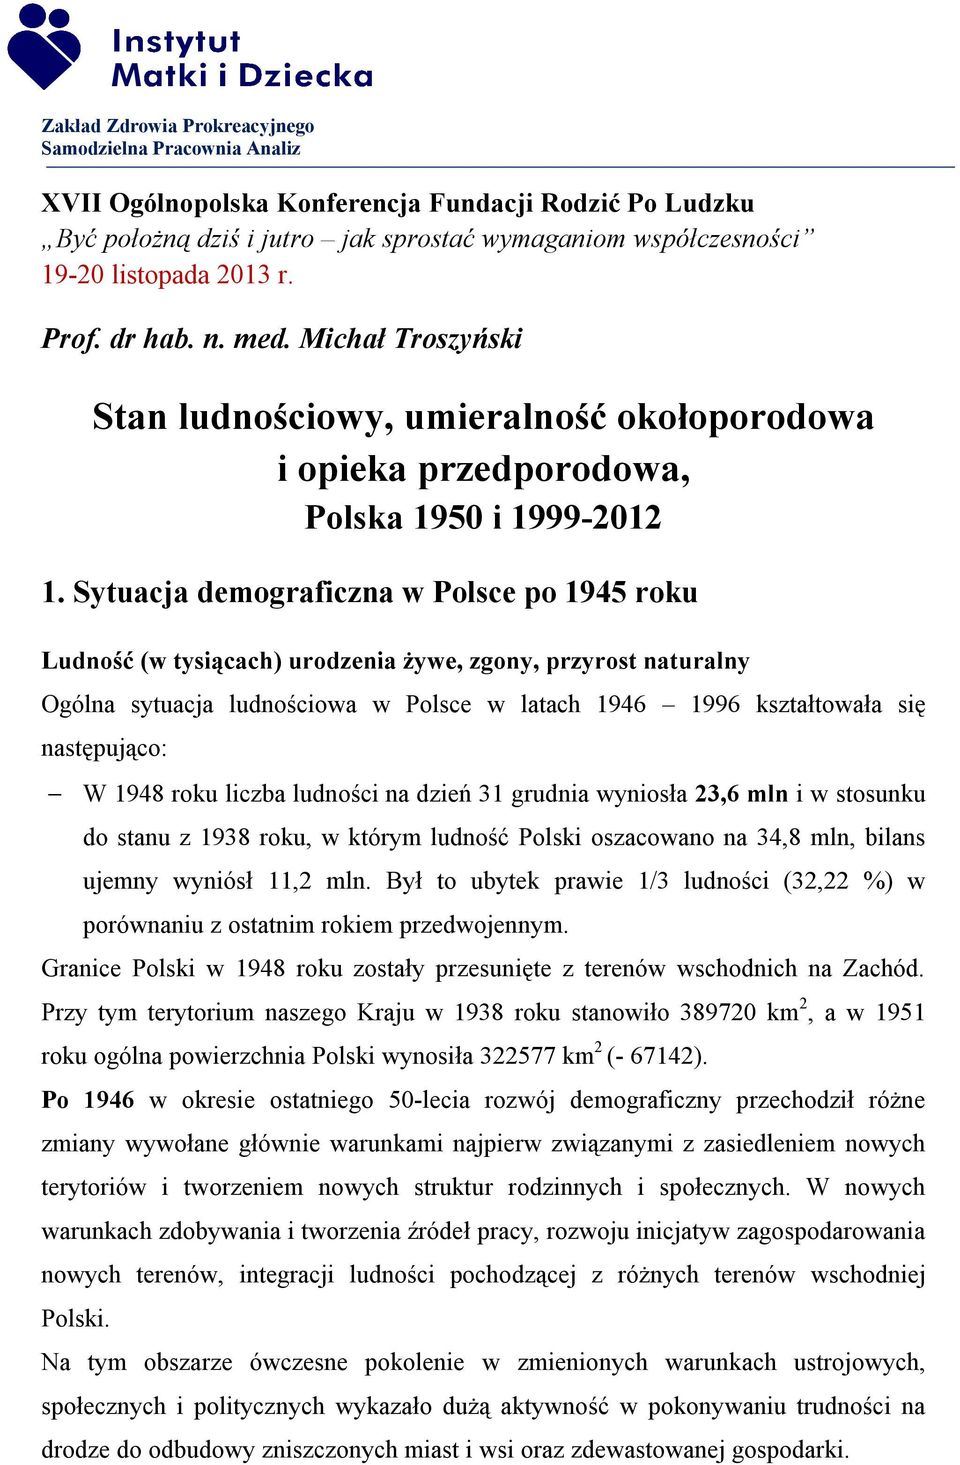 Sytuacja demograficzna w Polsce po 1945 roku Ludność (w tysiącach) urodzenia żywe, zgony, przyrost naturalny Ogólna sytuacja ludnościowa w Polsce w latach 1946 1996 kształtowała się następująco: W